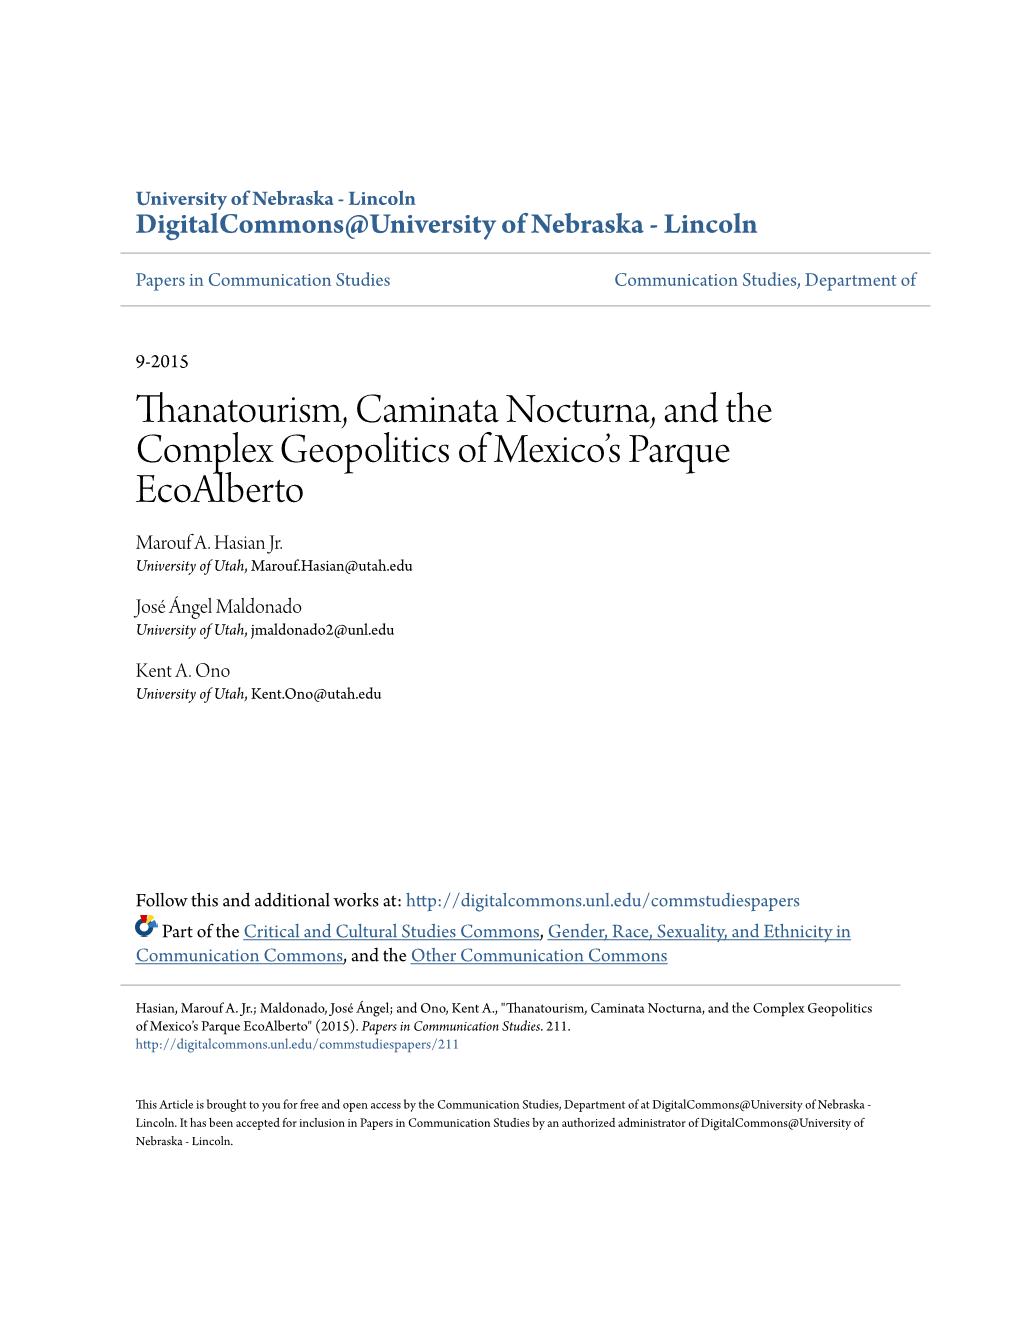 Thanatourism, Caminata Nocturna, and the Complex Geopolitics of Mexico’S Parque Ecoalberto Marouf A